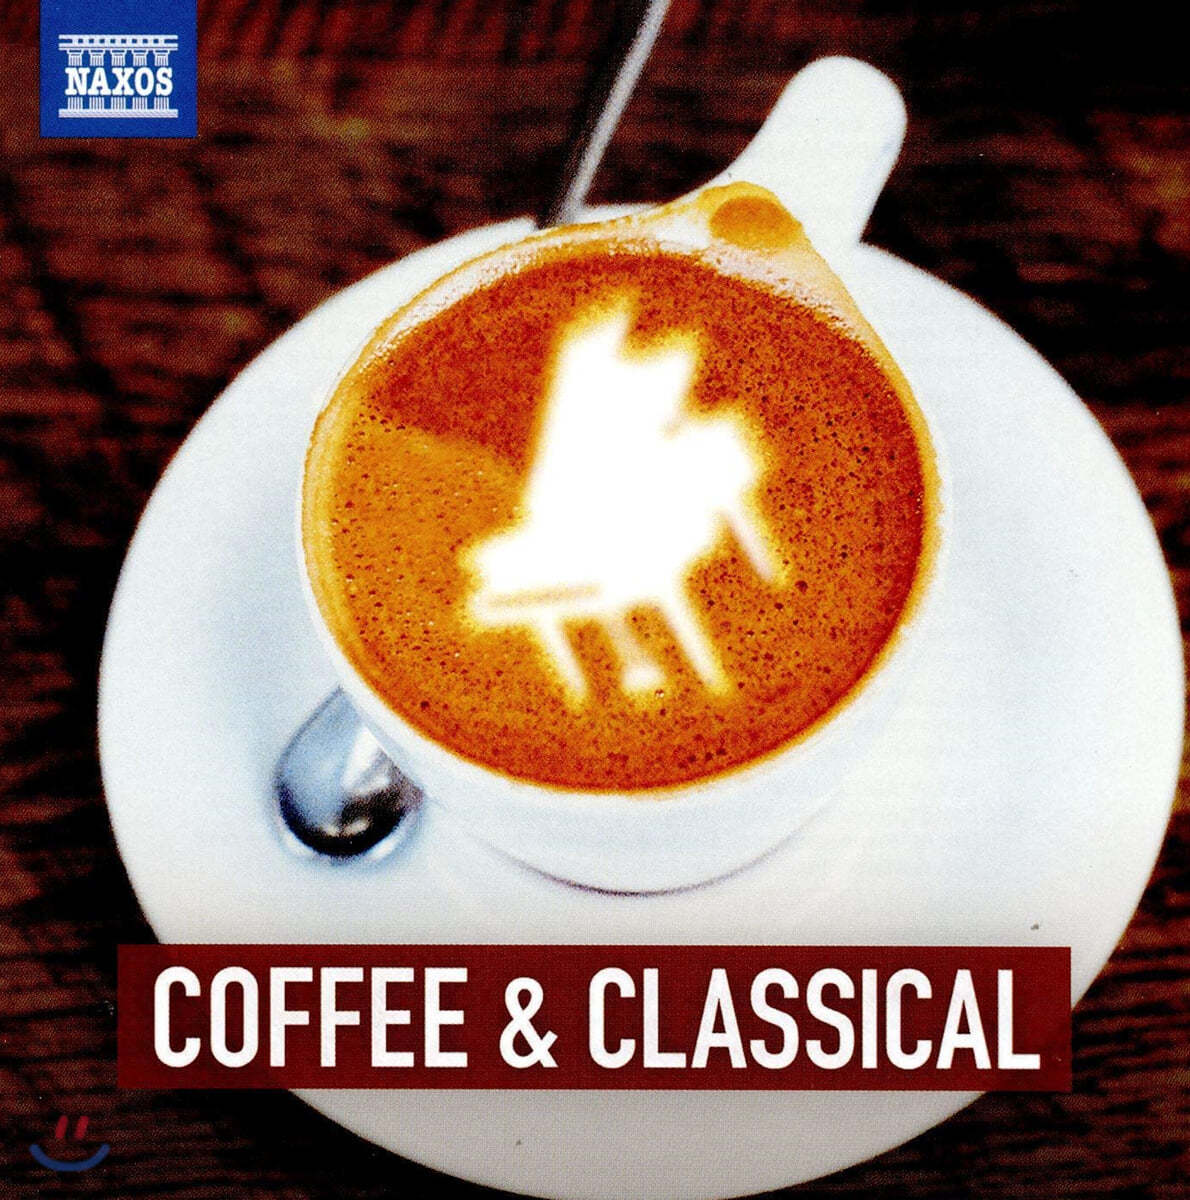 커피 한 잔과 함께하는 클래식 음악 (Coffee & Classical)